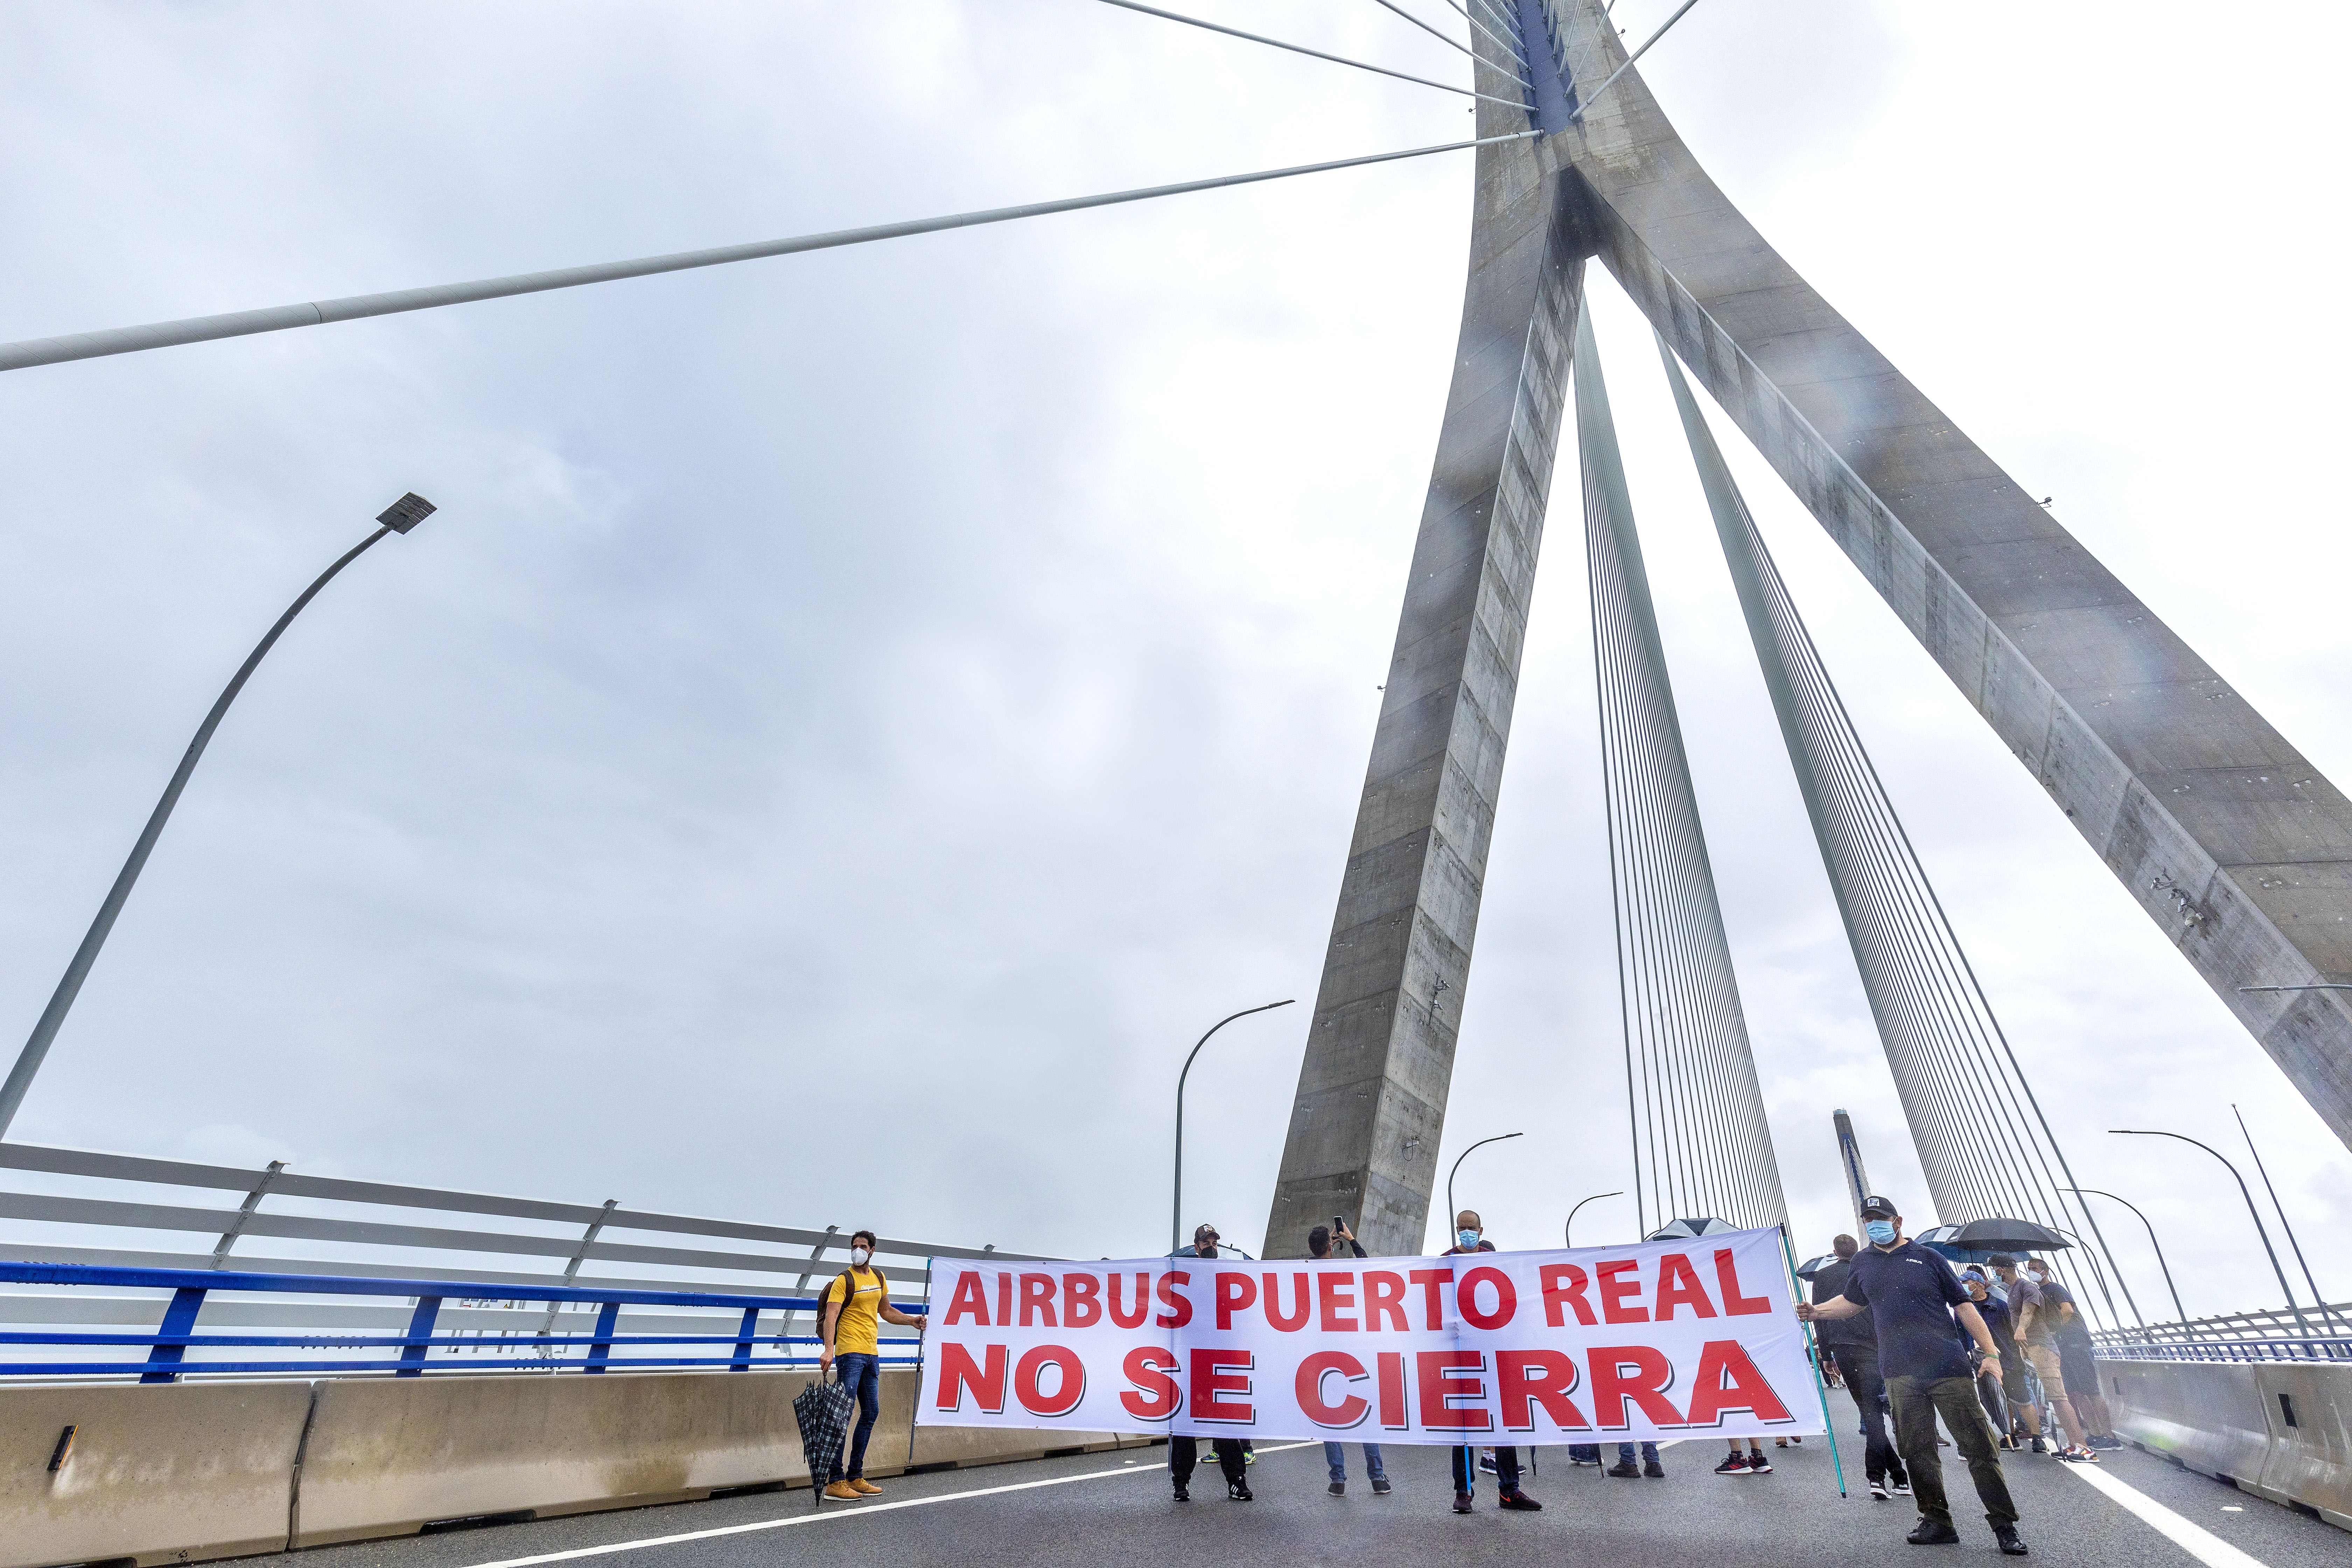 Una manifestación contra el cierre de Airbus Puerto Real pidiendo más carga de trabajo.